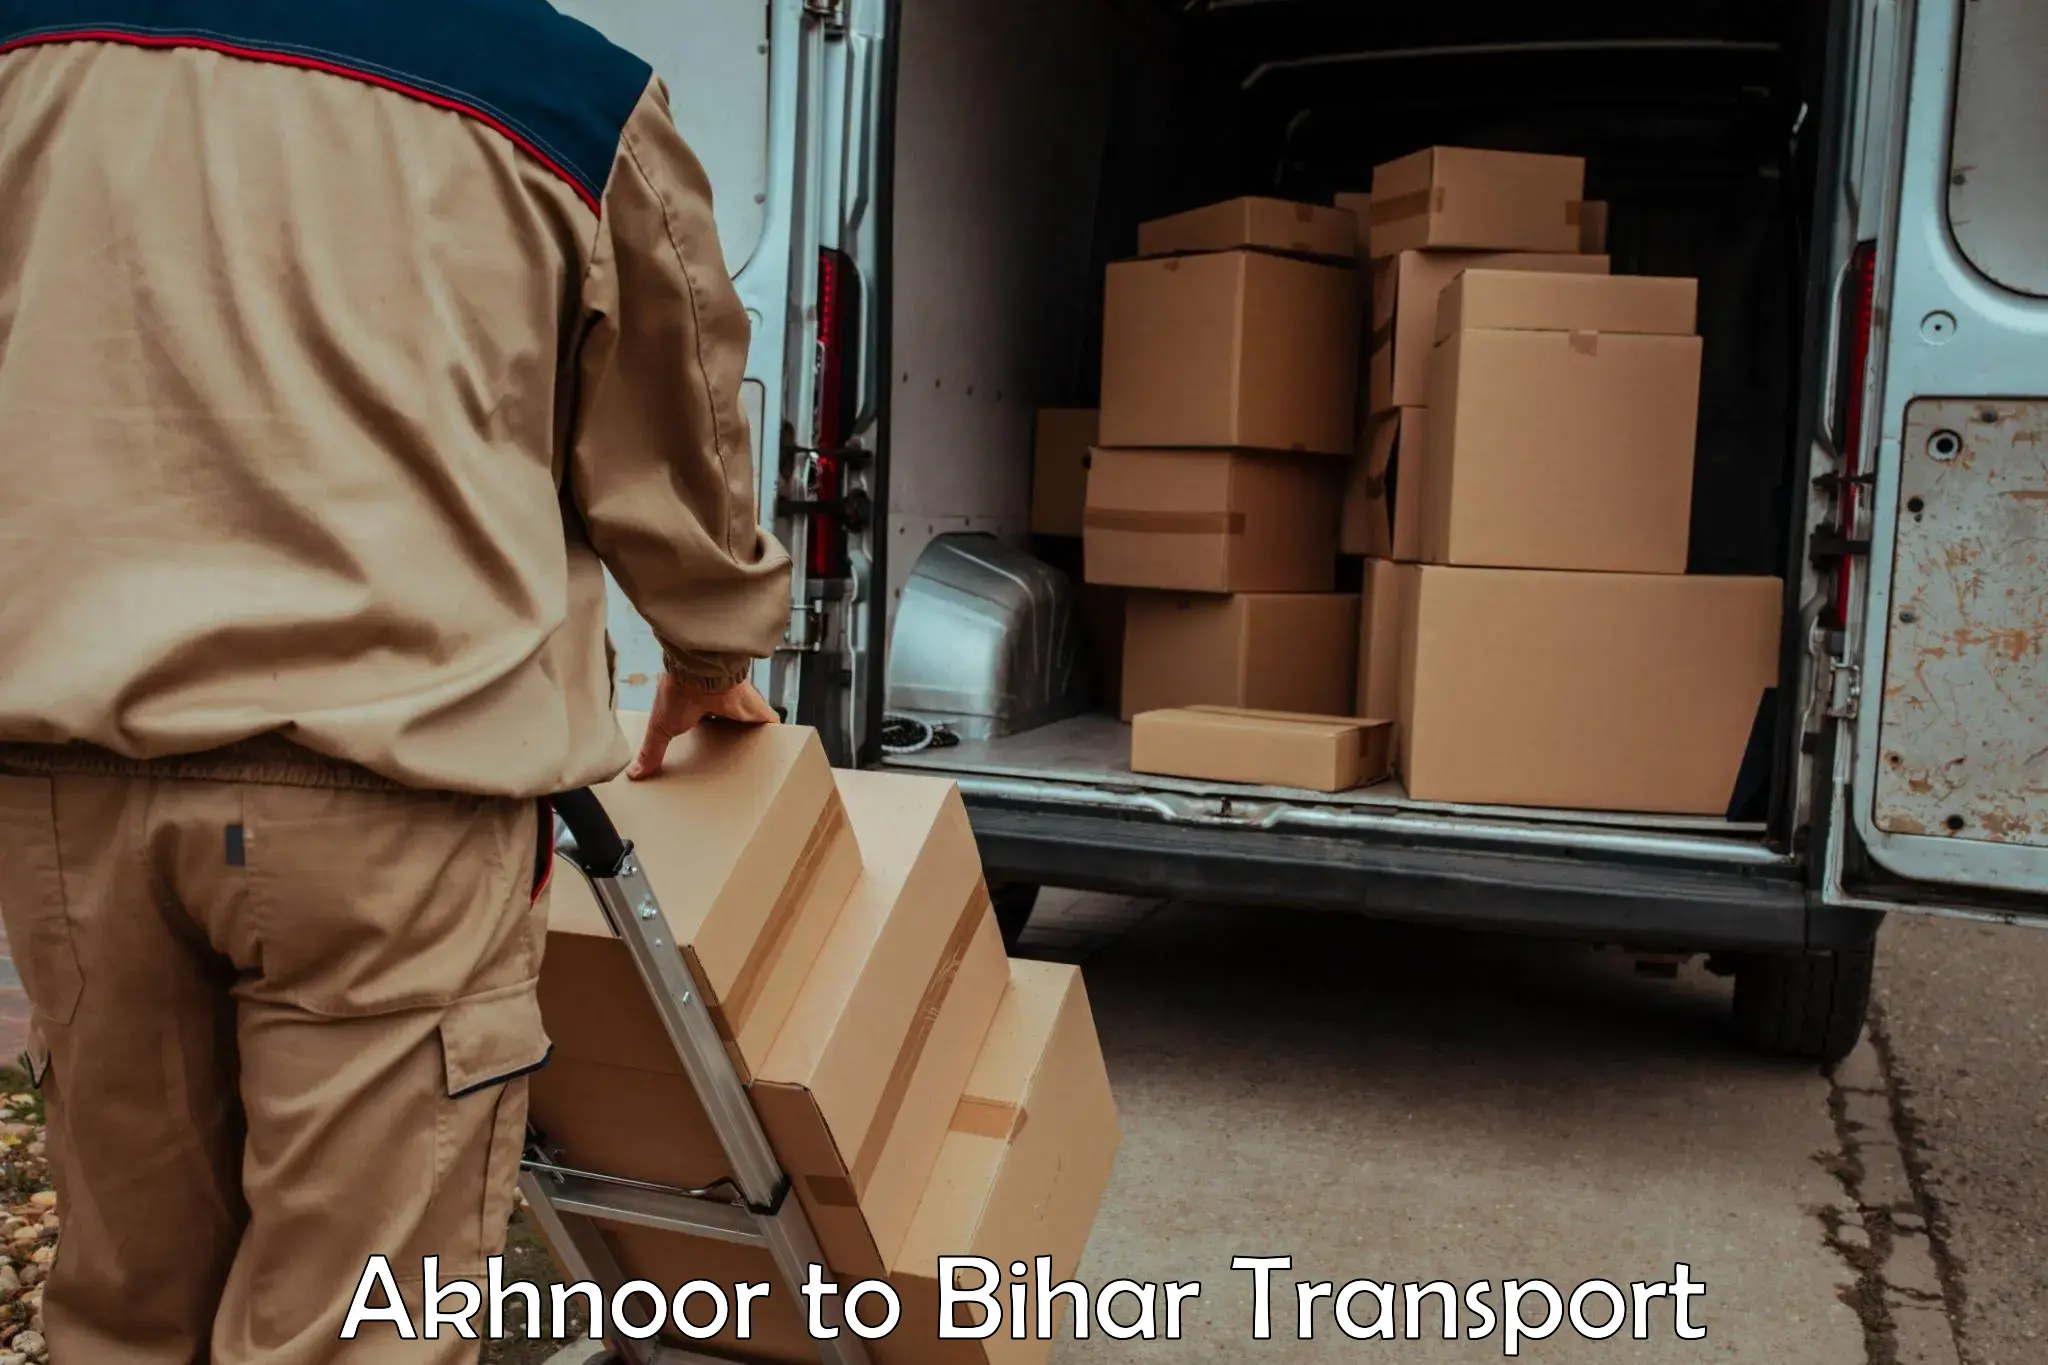 Container transport service Akhnoor to Gaya